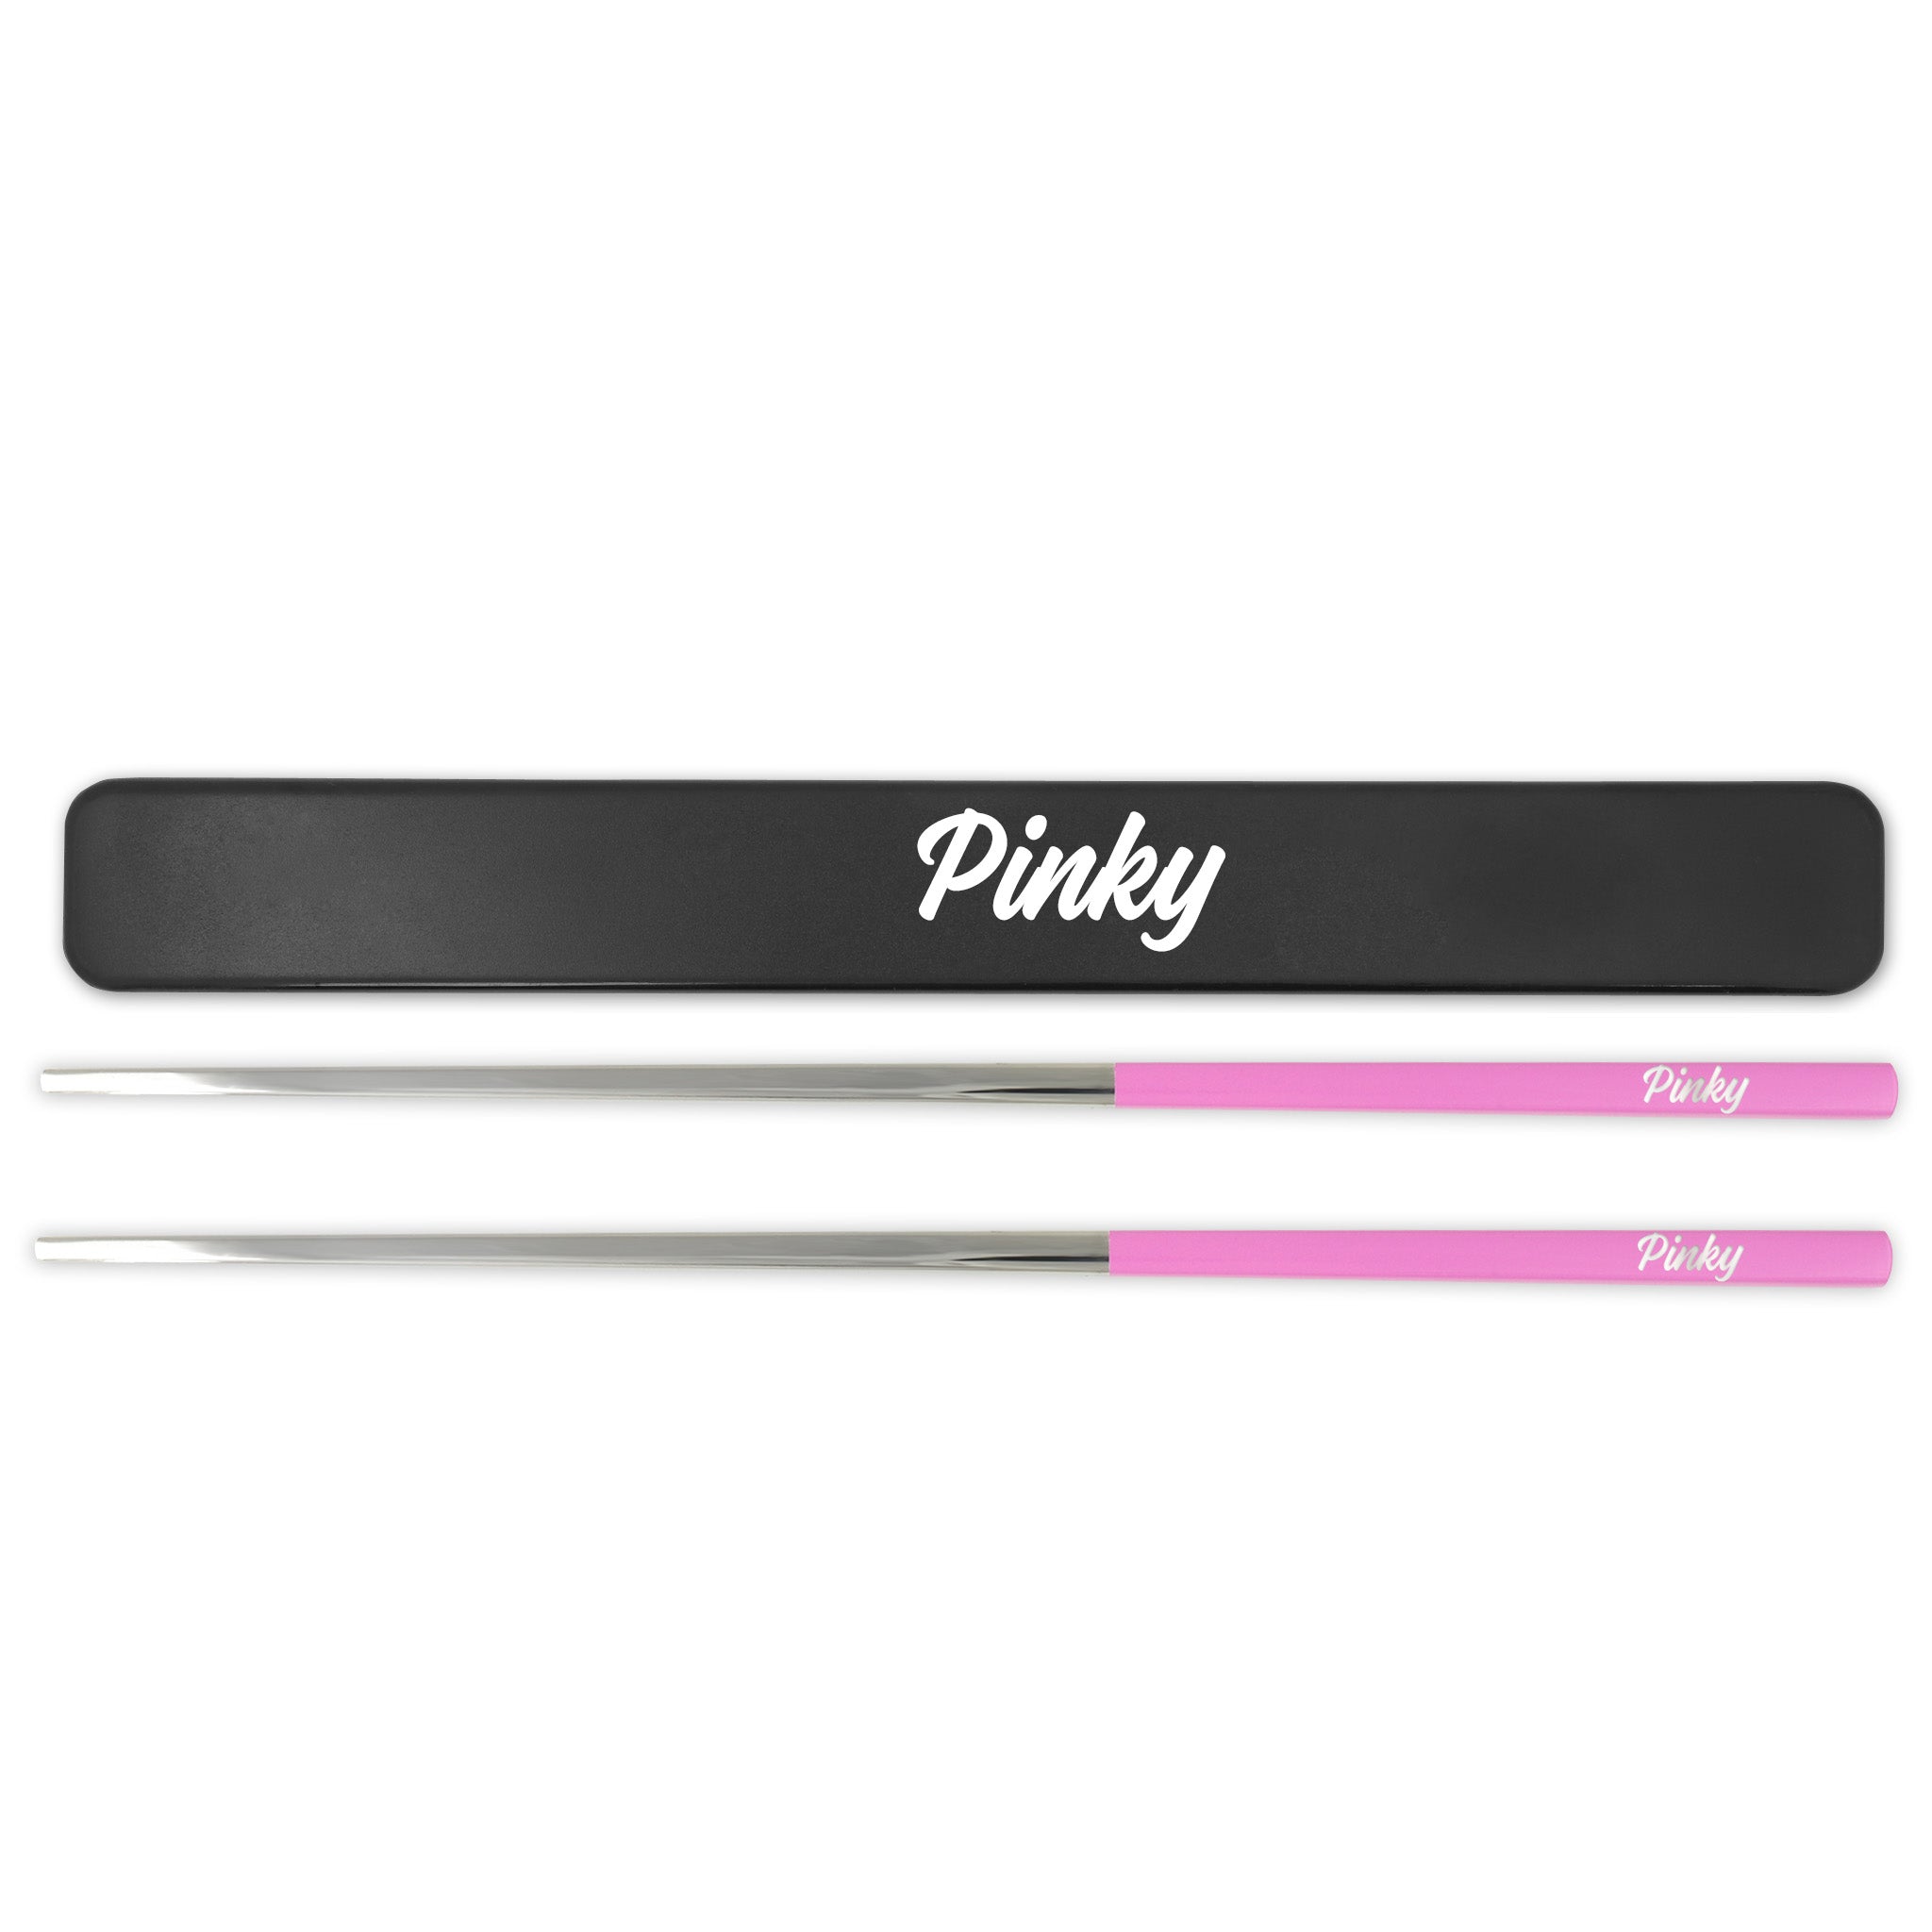 Stainless Steel Reusable Chopsticks Set (Pink / Silver)